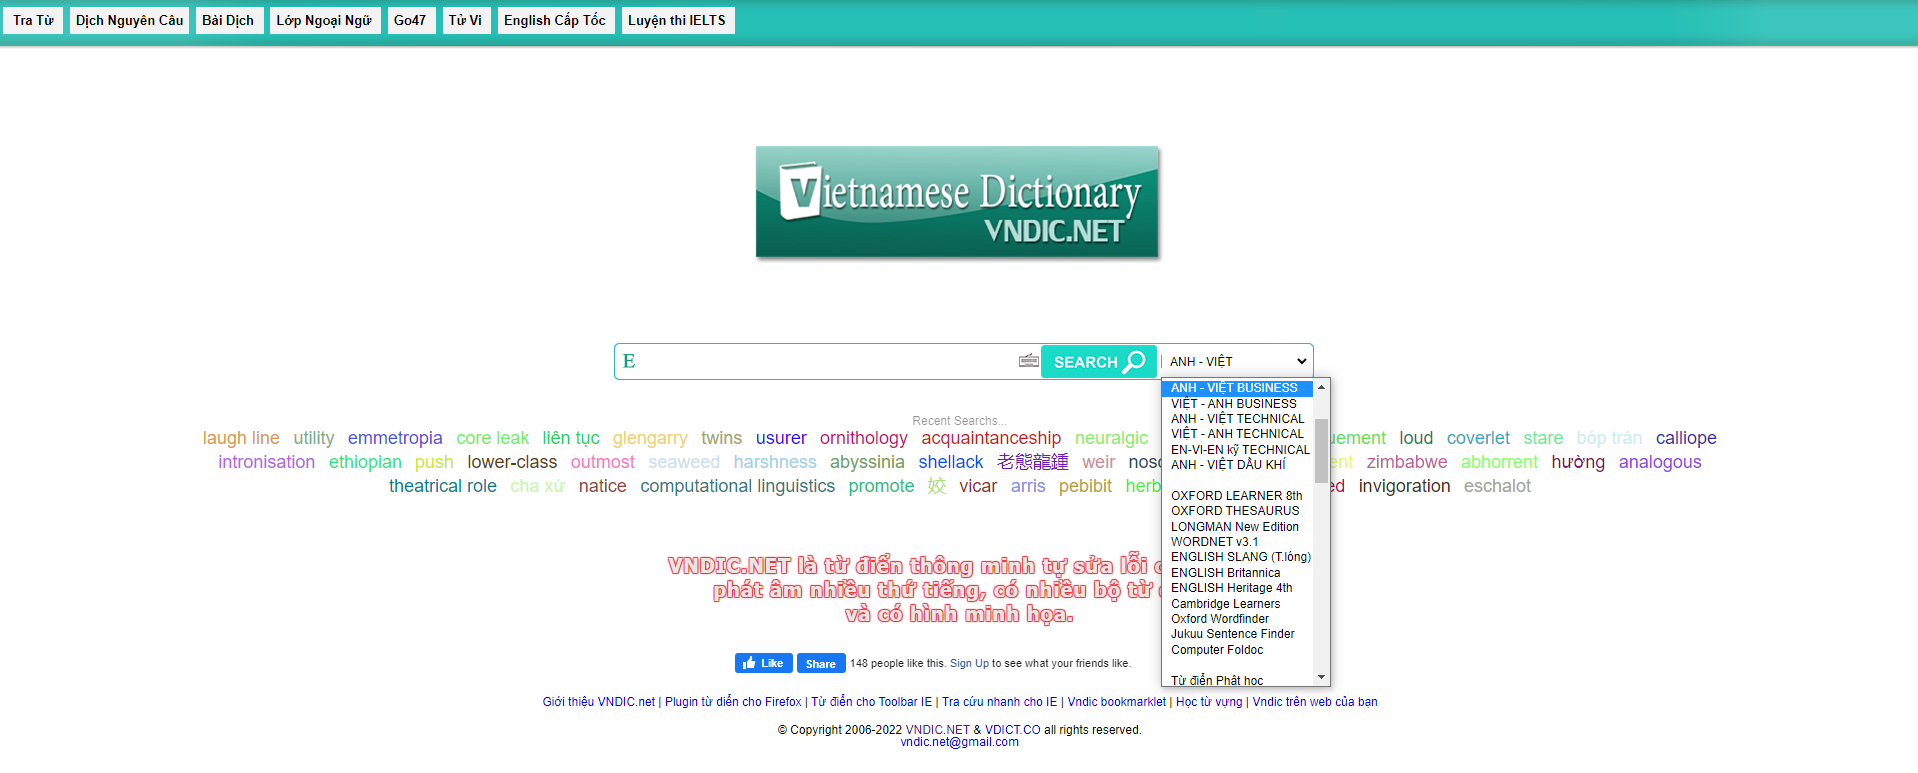 GEARVN - Trang web từ điển online VNDic